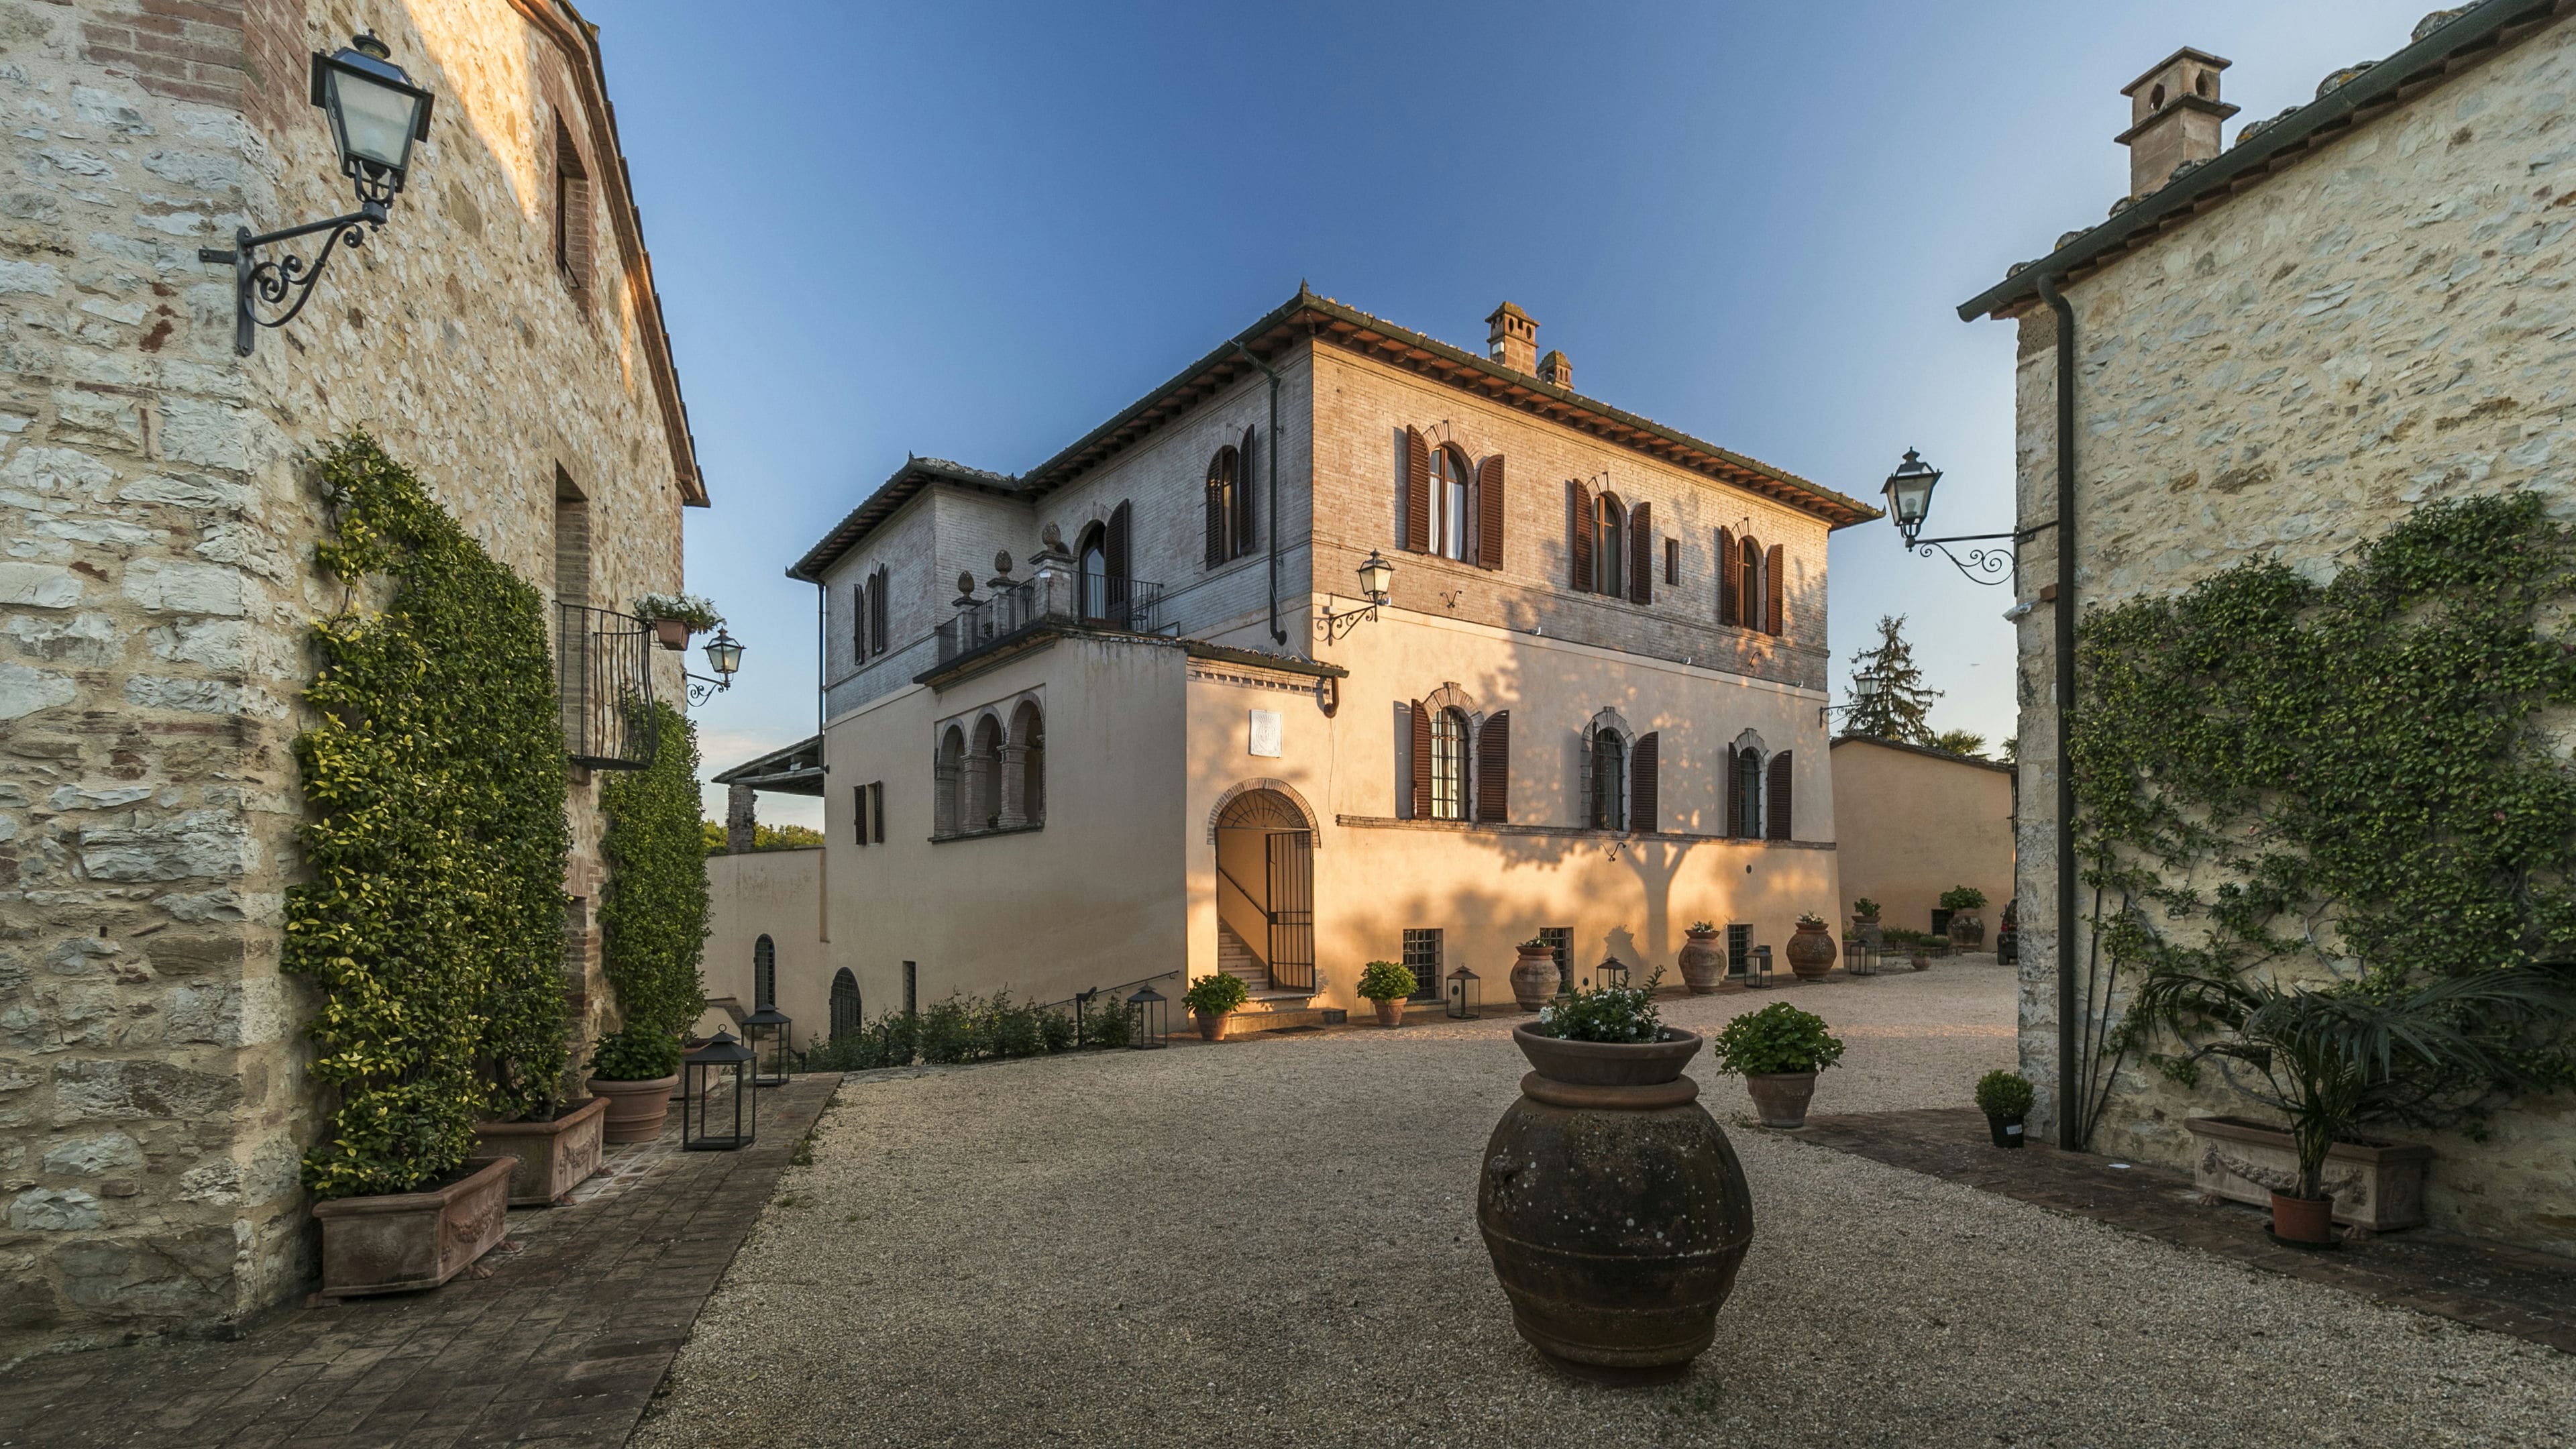 Villa Collalto Colle di Val d'Elsa Siena Tuscany